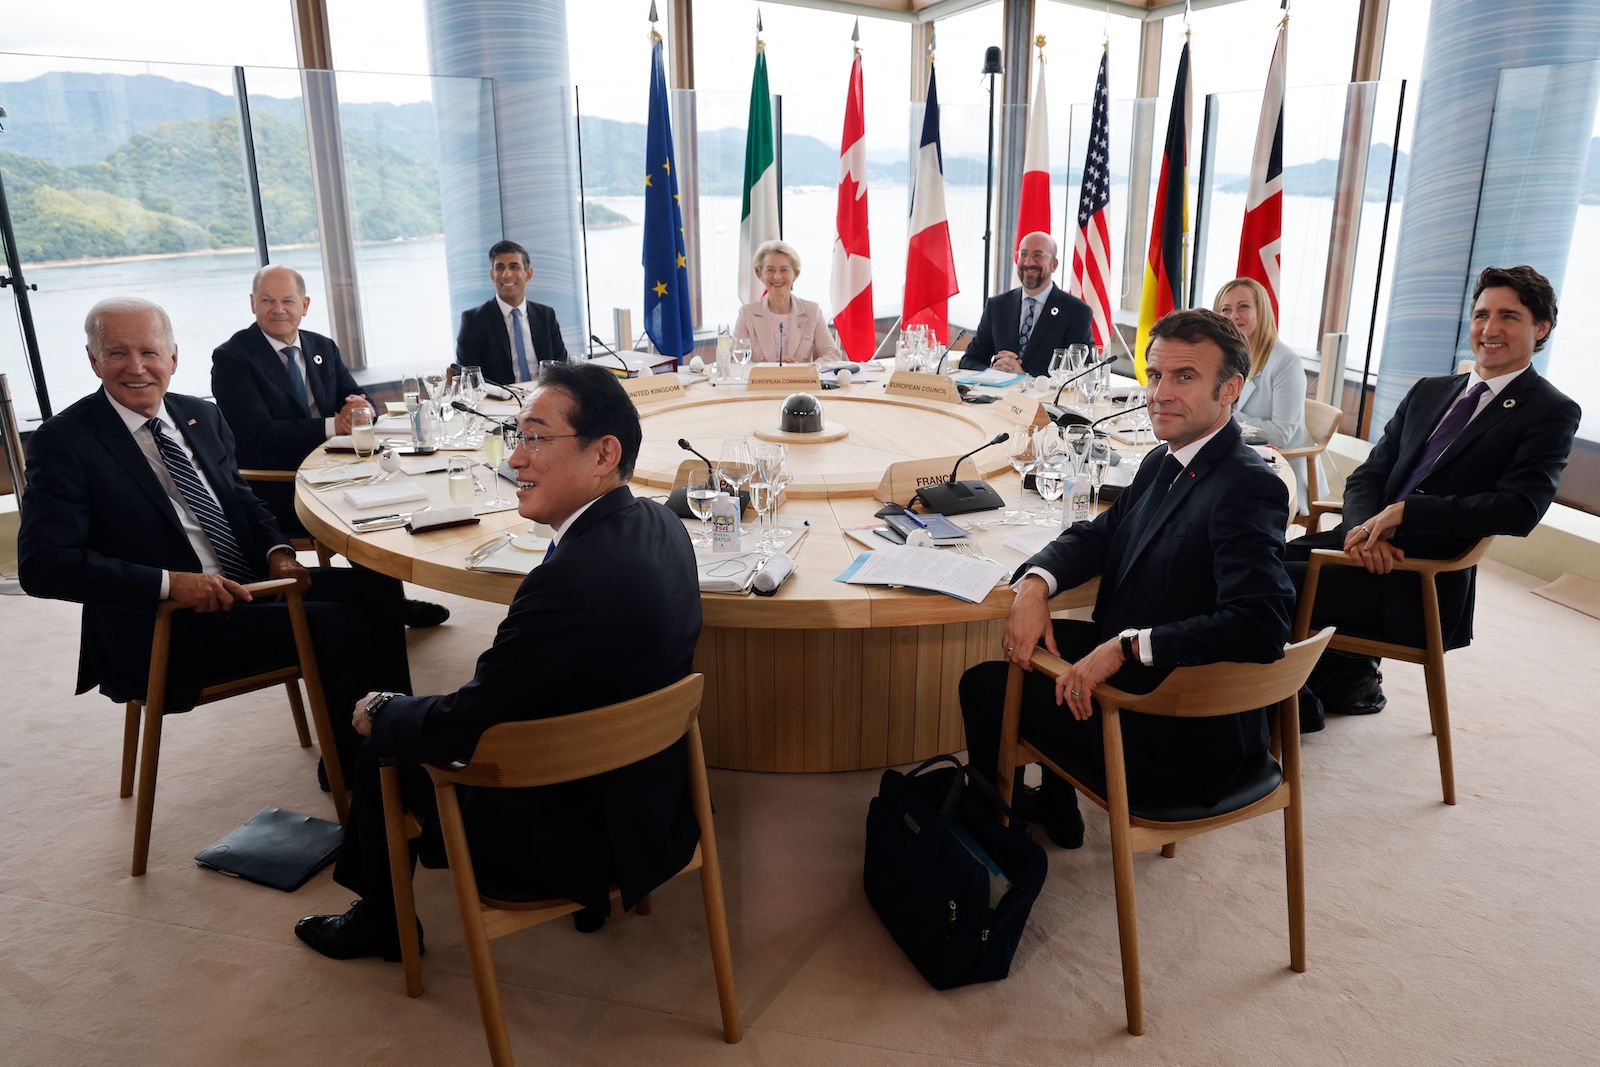 (Từ trái sang phải) Tổng thống Hoa Kỳ Joe Biden, Thủ tướng Đức Olaf Scholz, Thủ tướng Anh Rishi Sunak, Thủ tướng Nhật Bản Fumio Kishida, Chủ tịch Ủy ban Âu Châu Ursula von der Leyen, Chủ tịch Hội đồng Âu Châu Charles Michel, Tổng thống Pháp Emmanuel Macron, Thủ tướng Ý Giorgia Meloni, và Thủ tướng Canada Justin Trudeau tham gia bữa trưa giữa buổi họp trong khuôn khổ Hội nghị thượng đỉnh các nhà lãnh đạo G-7 ở Hiroshima, Nhật Bản, hôm 19/05/2023. (Ảnh: Ludovic Marin/AFP/Getty Images)